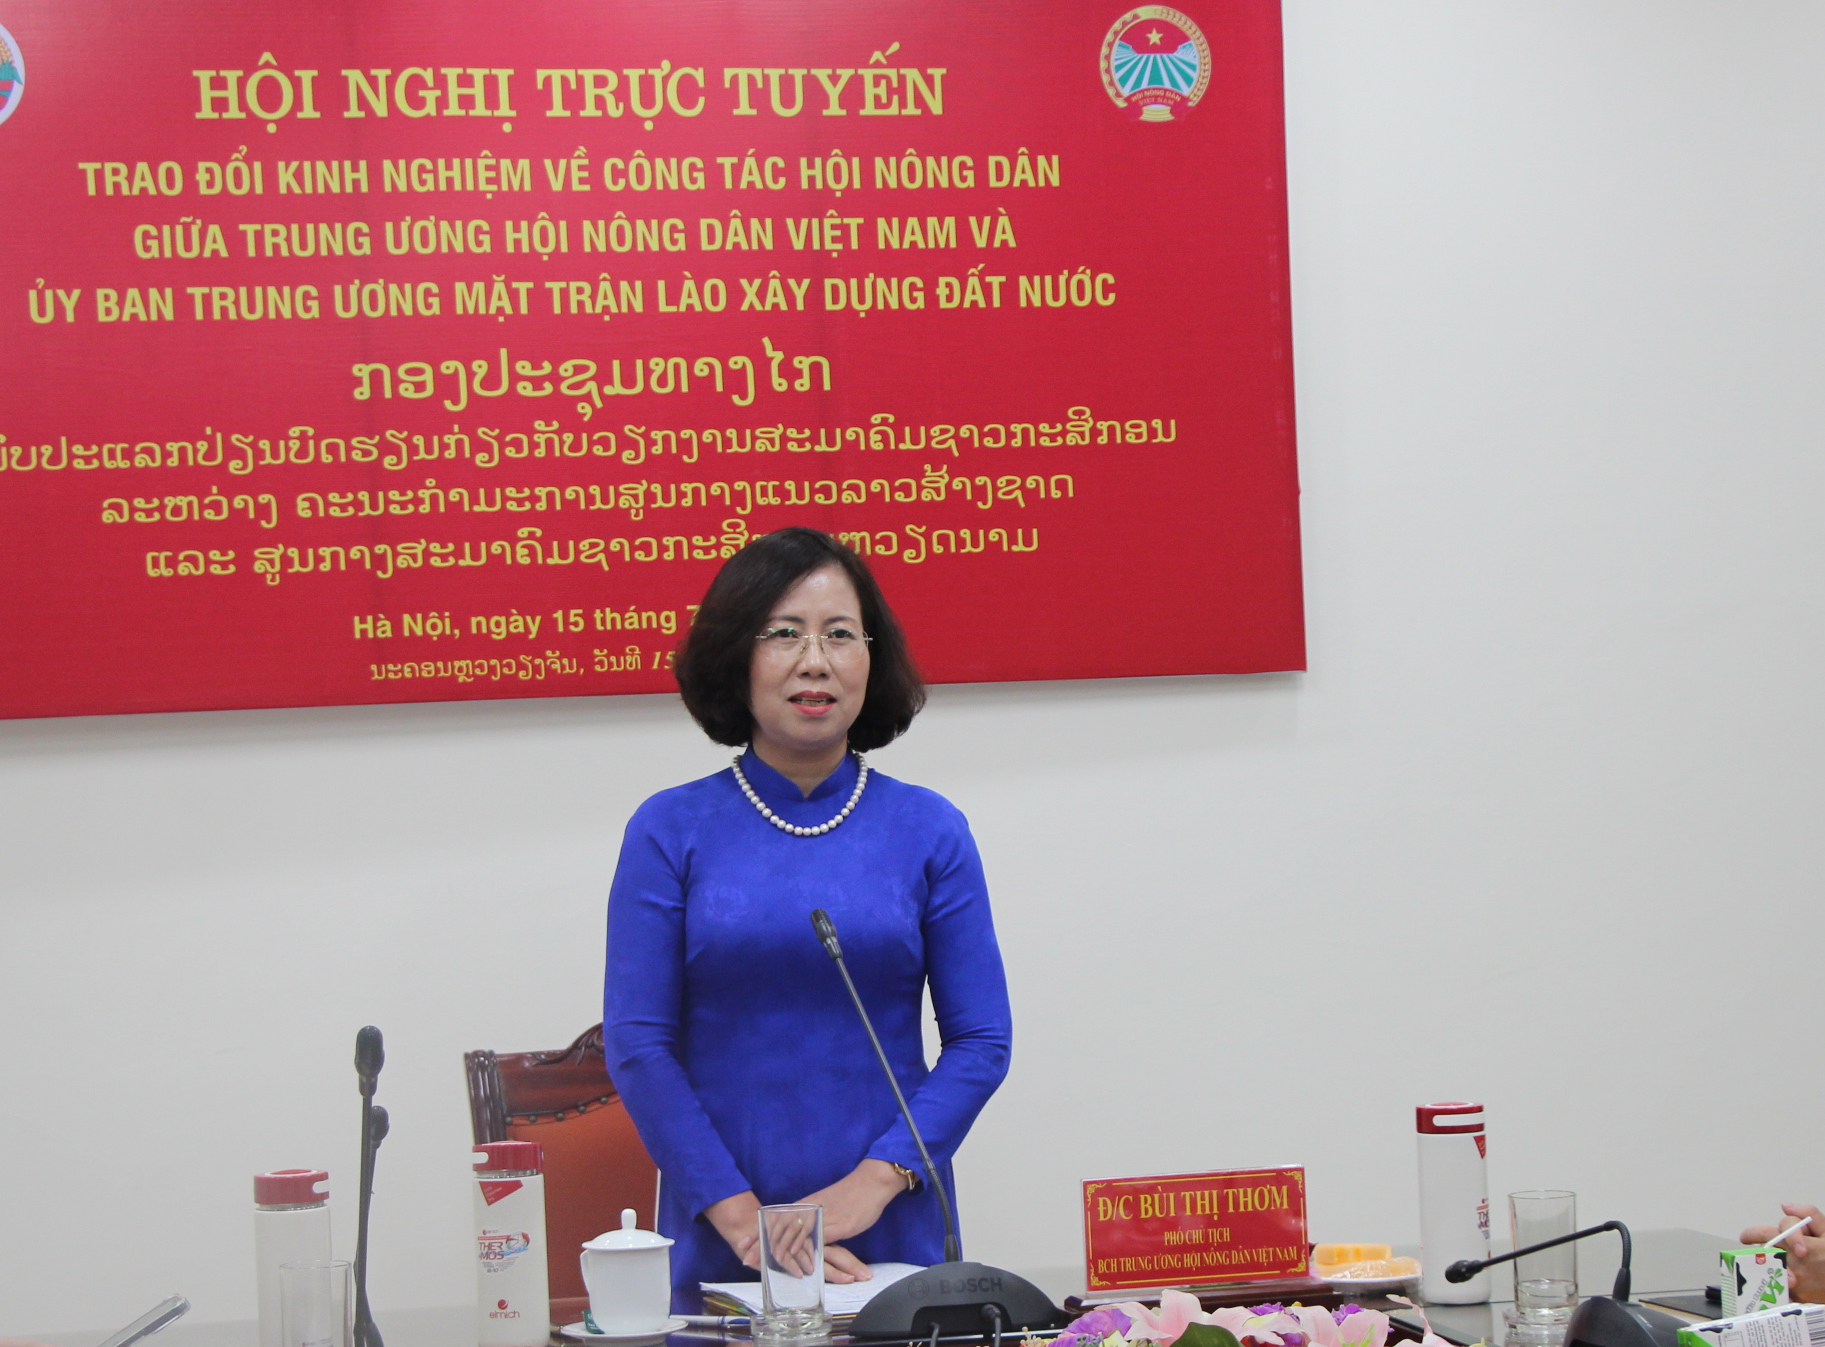 Hội Nông dân Việt Nam tổ chức Hội nghị trao đổi kinh nghiệm công tác Hội với T.Ư Mặt trận Lào xây dựng đất nước - Ảnh 2.